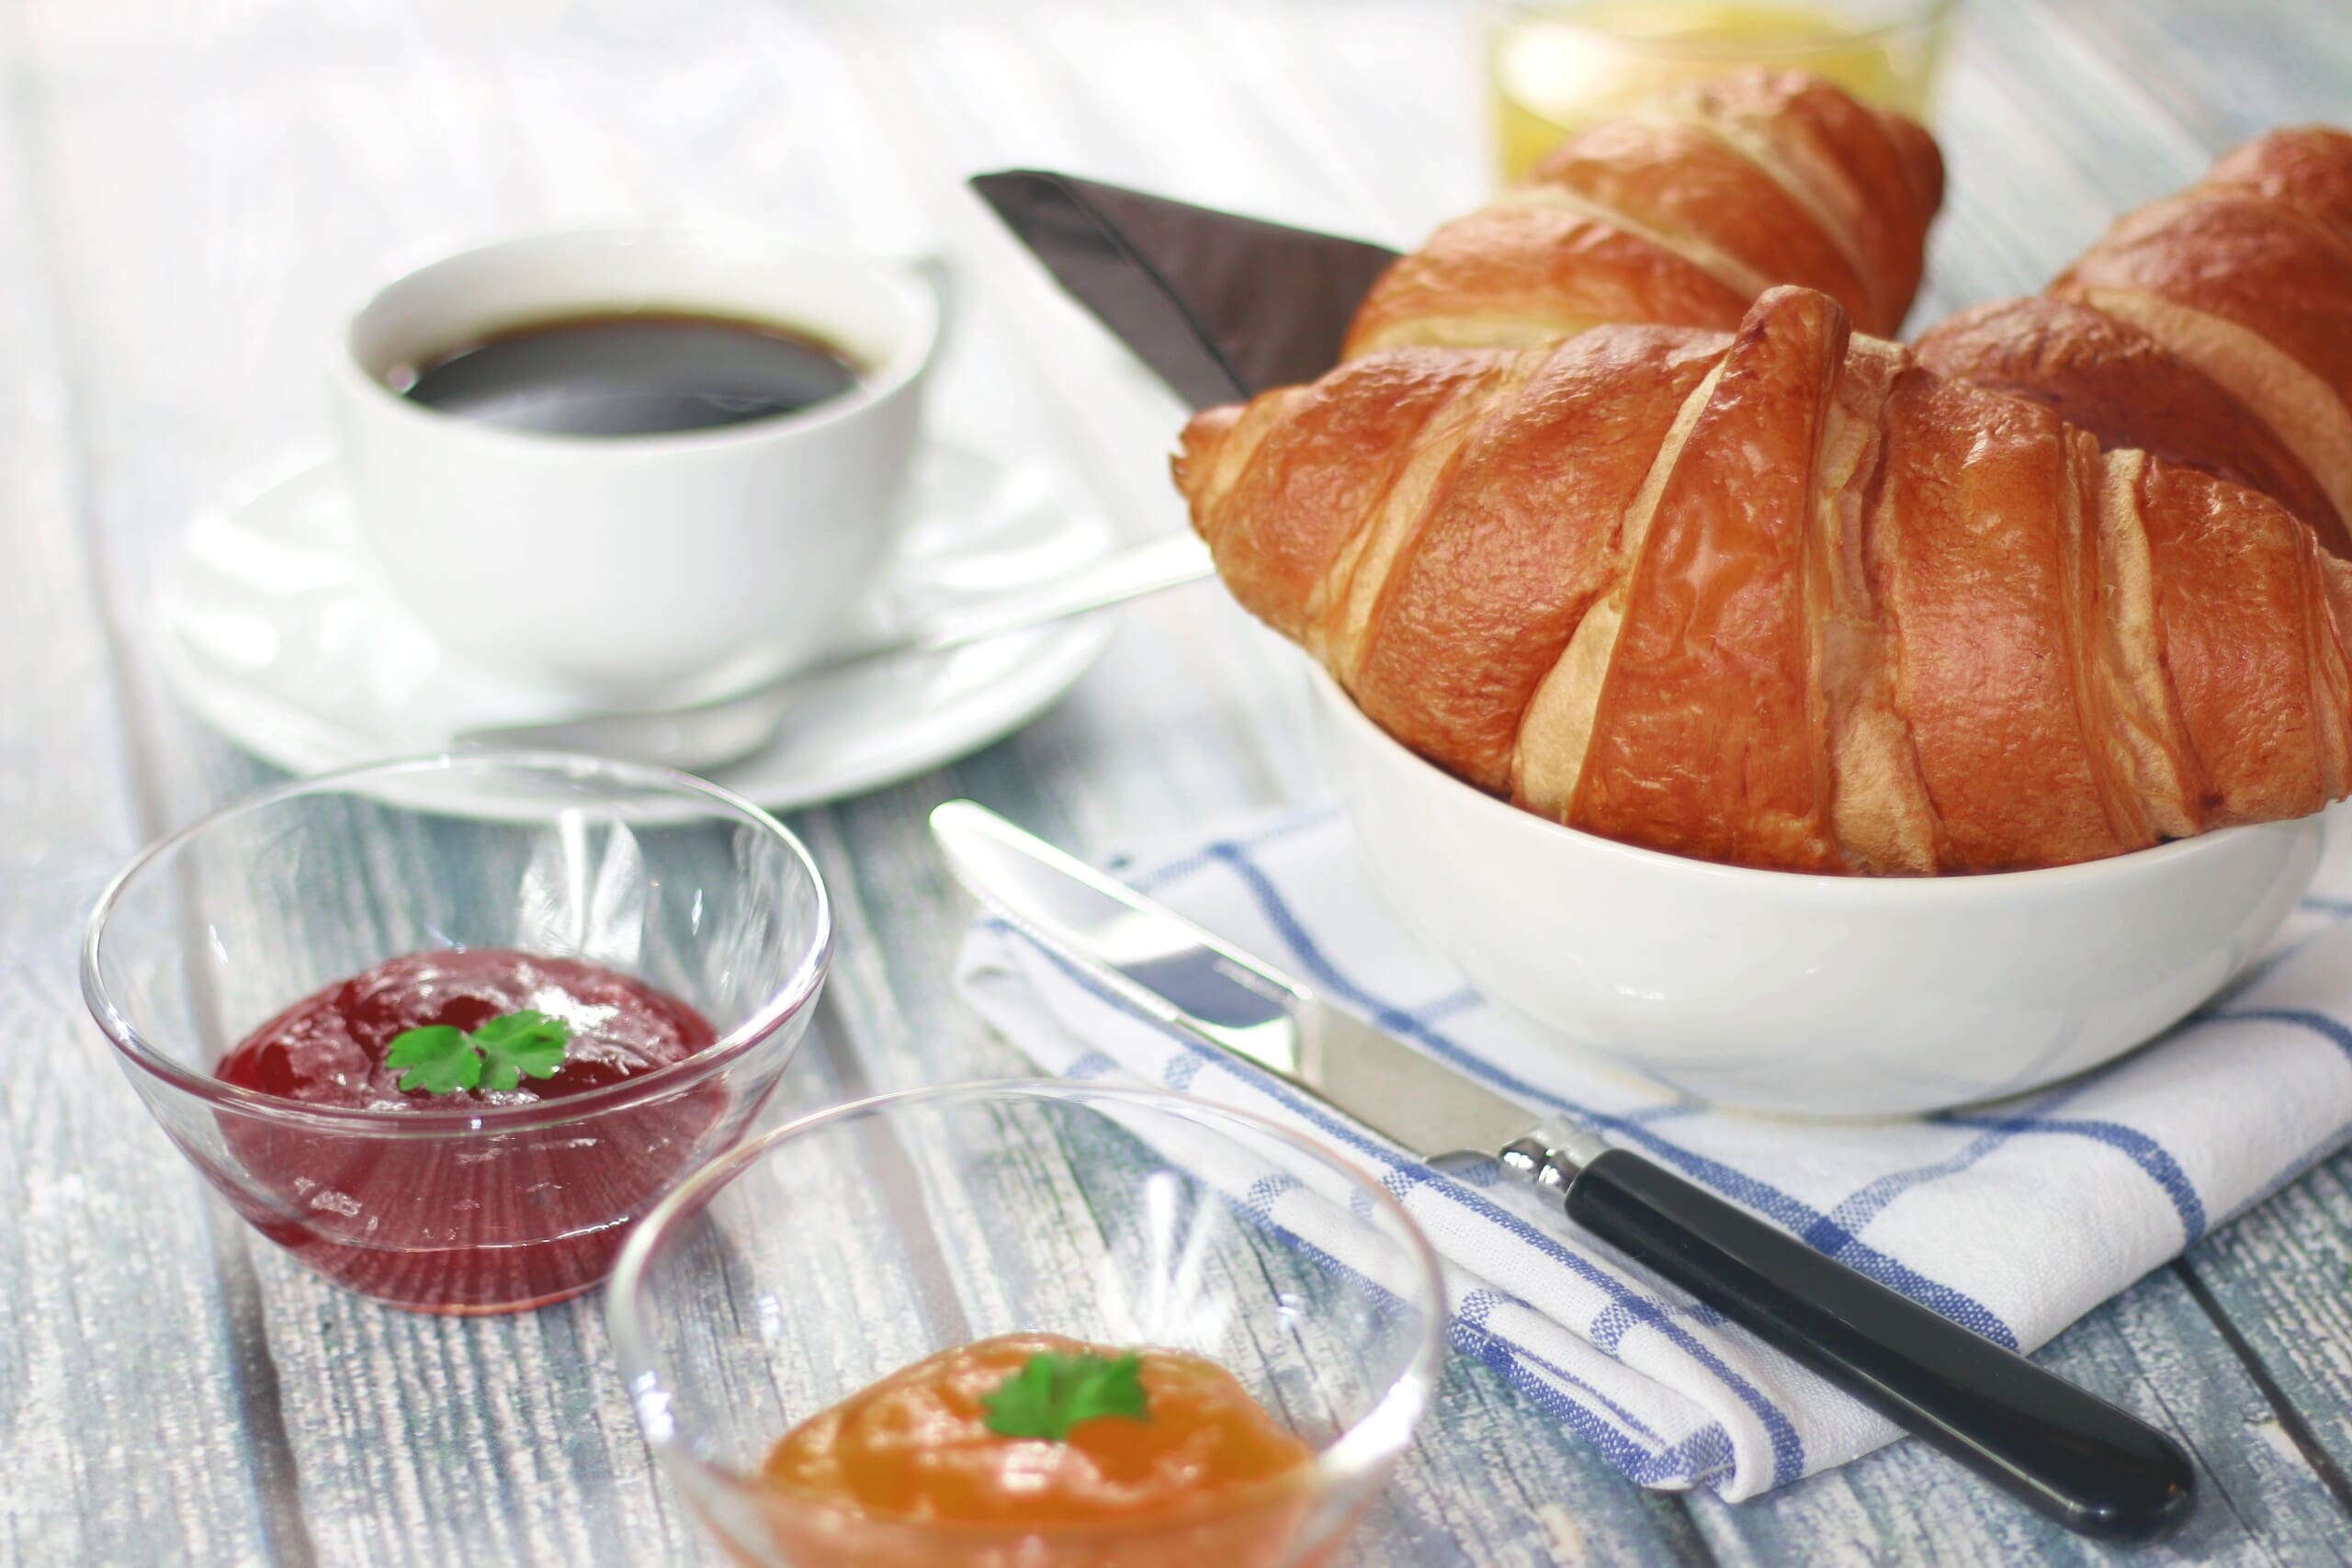 Frühstückstisch mit Kaffee, Croissant und Marmelade, wie er beim Arbeitsfrühstück aussehen könnte